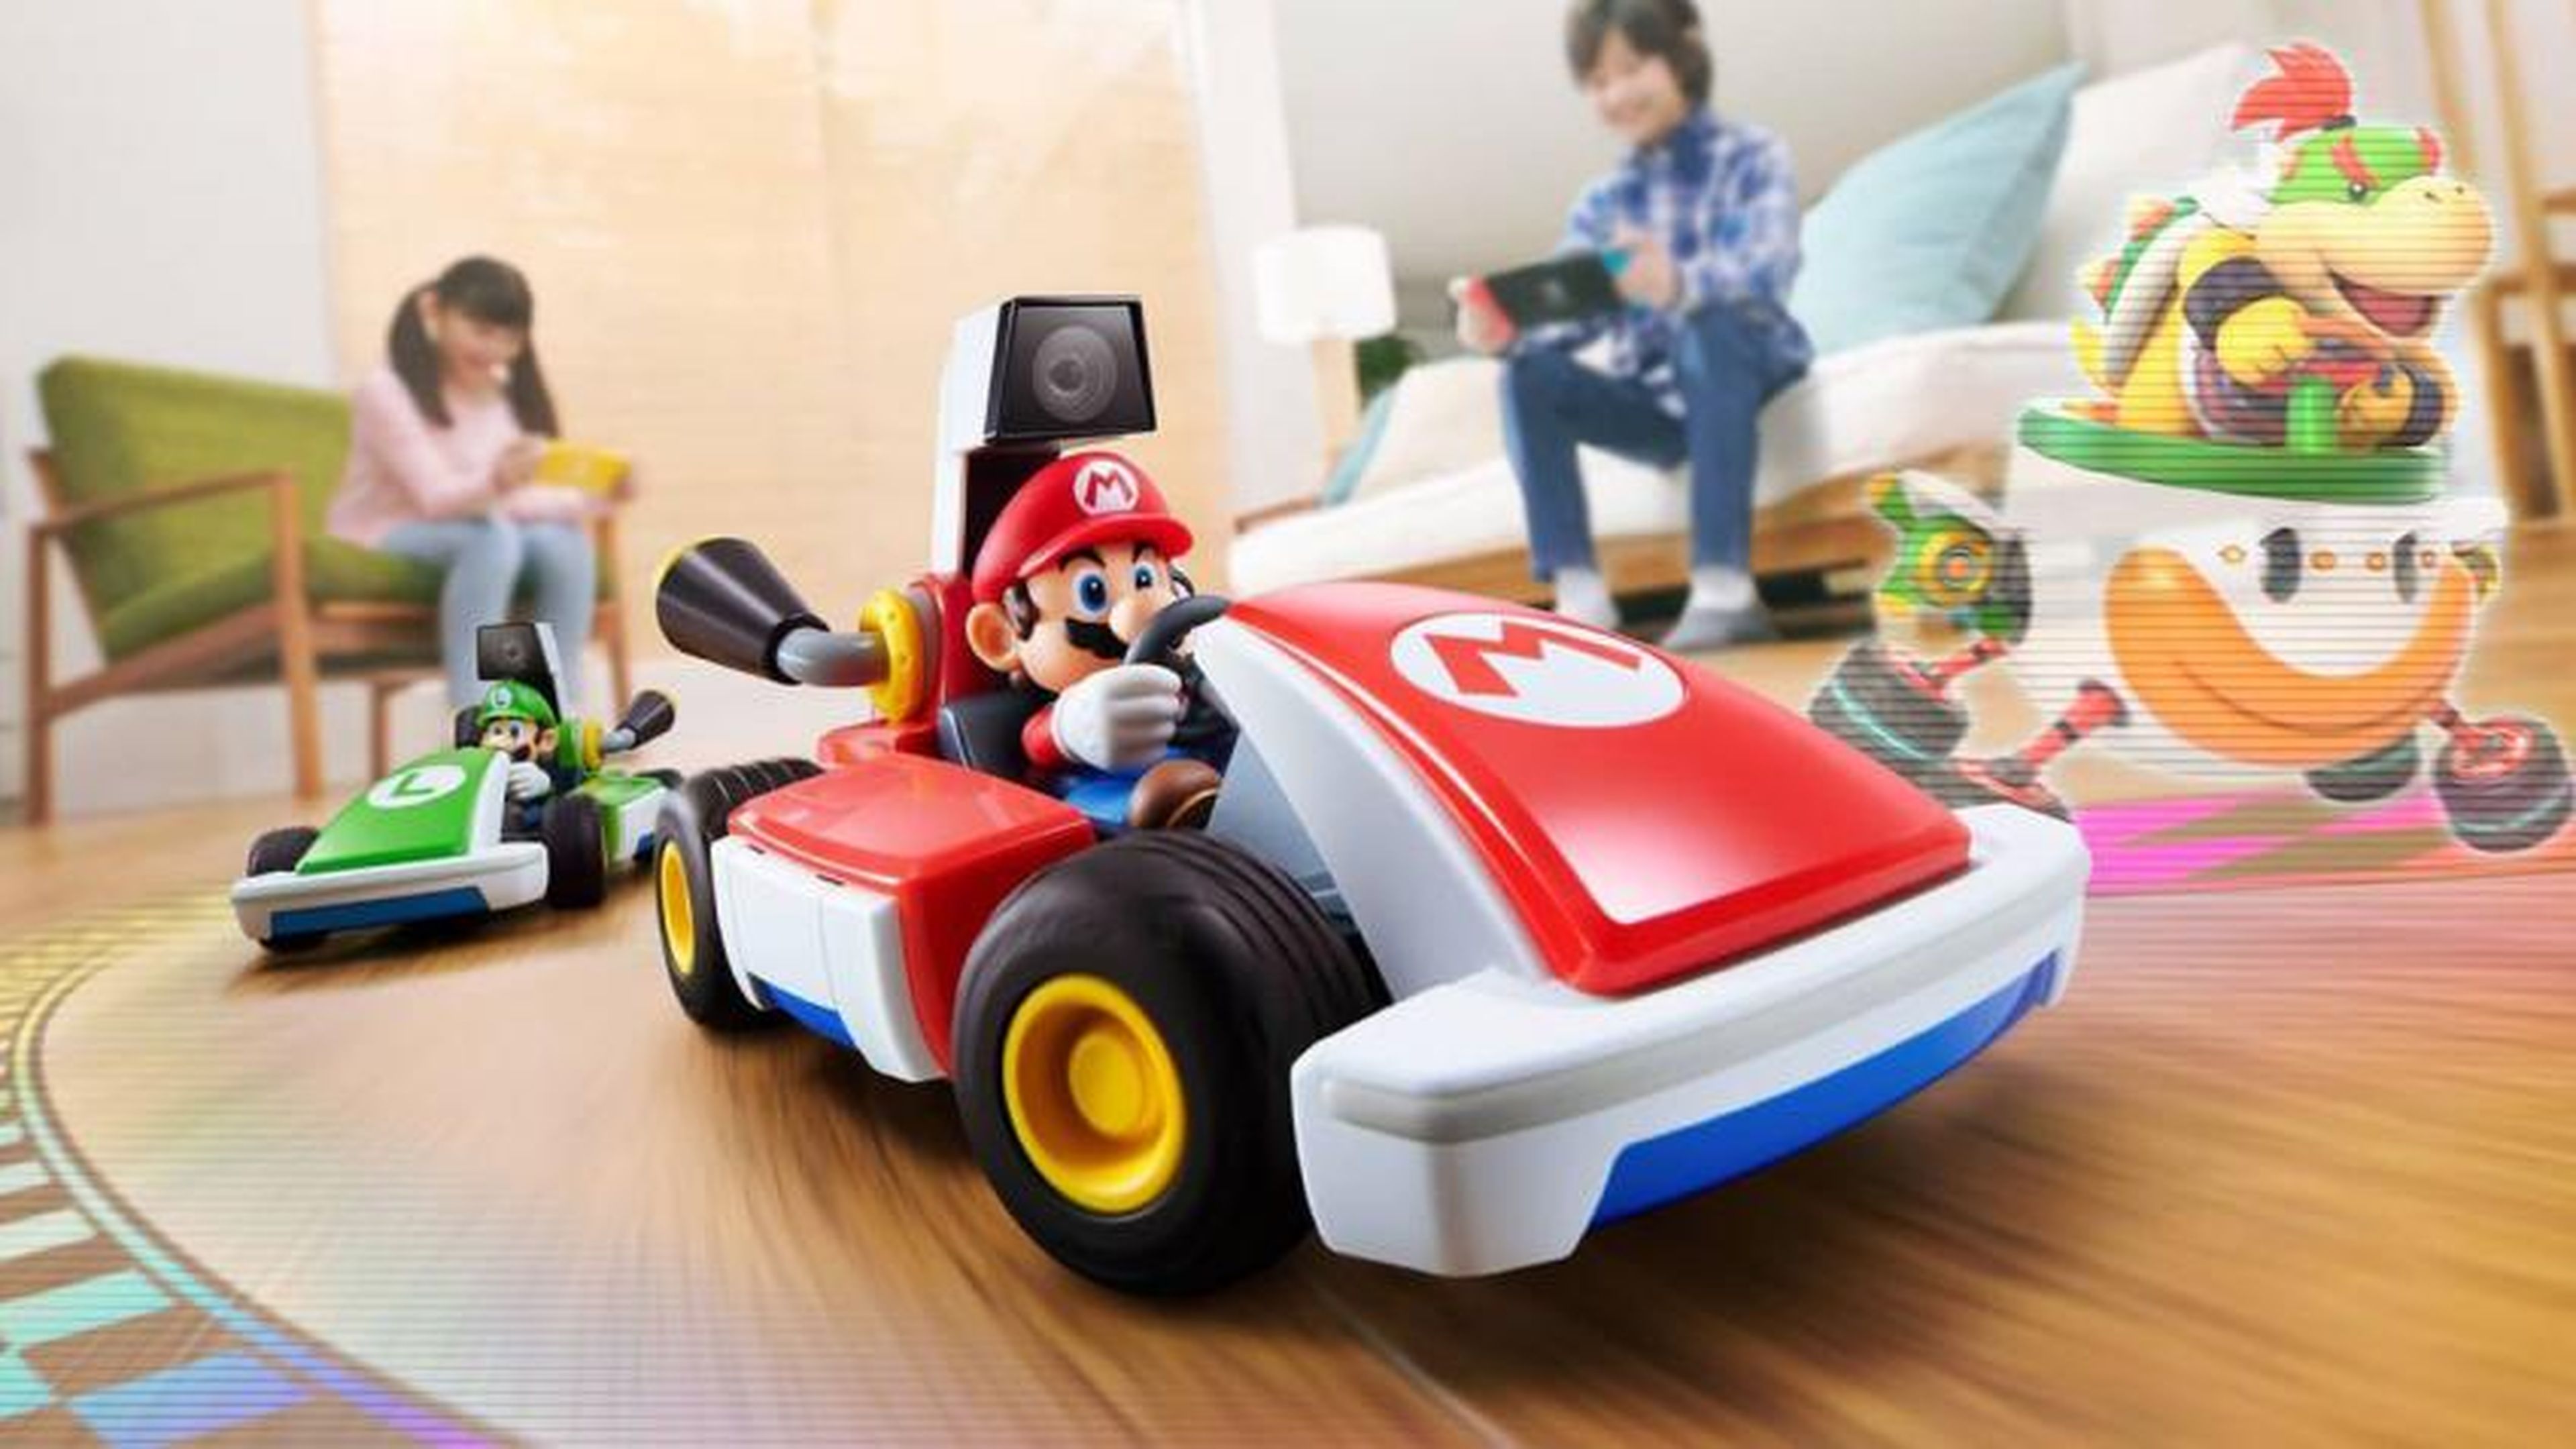 Mario Kart Home Circuit